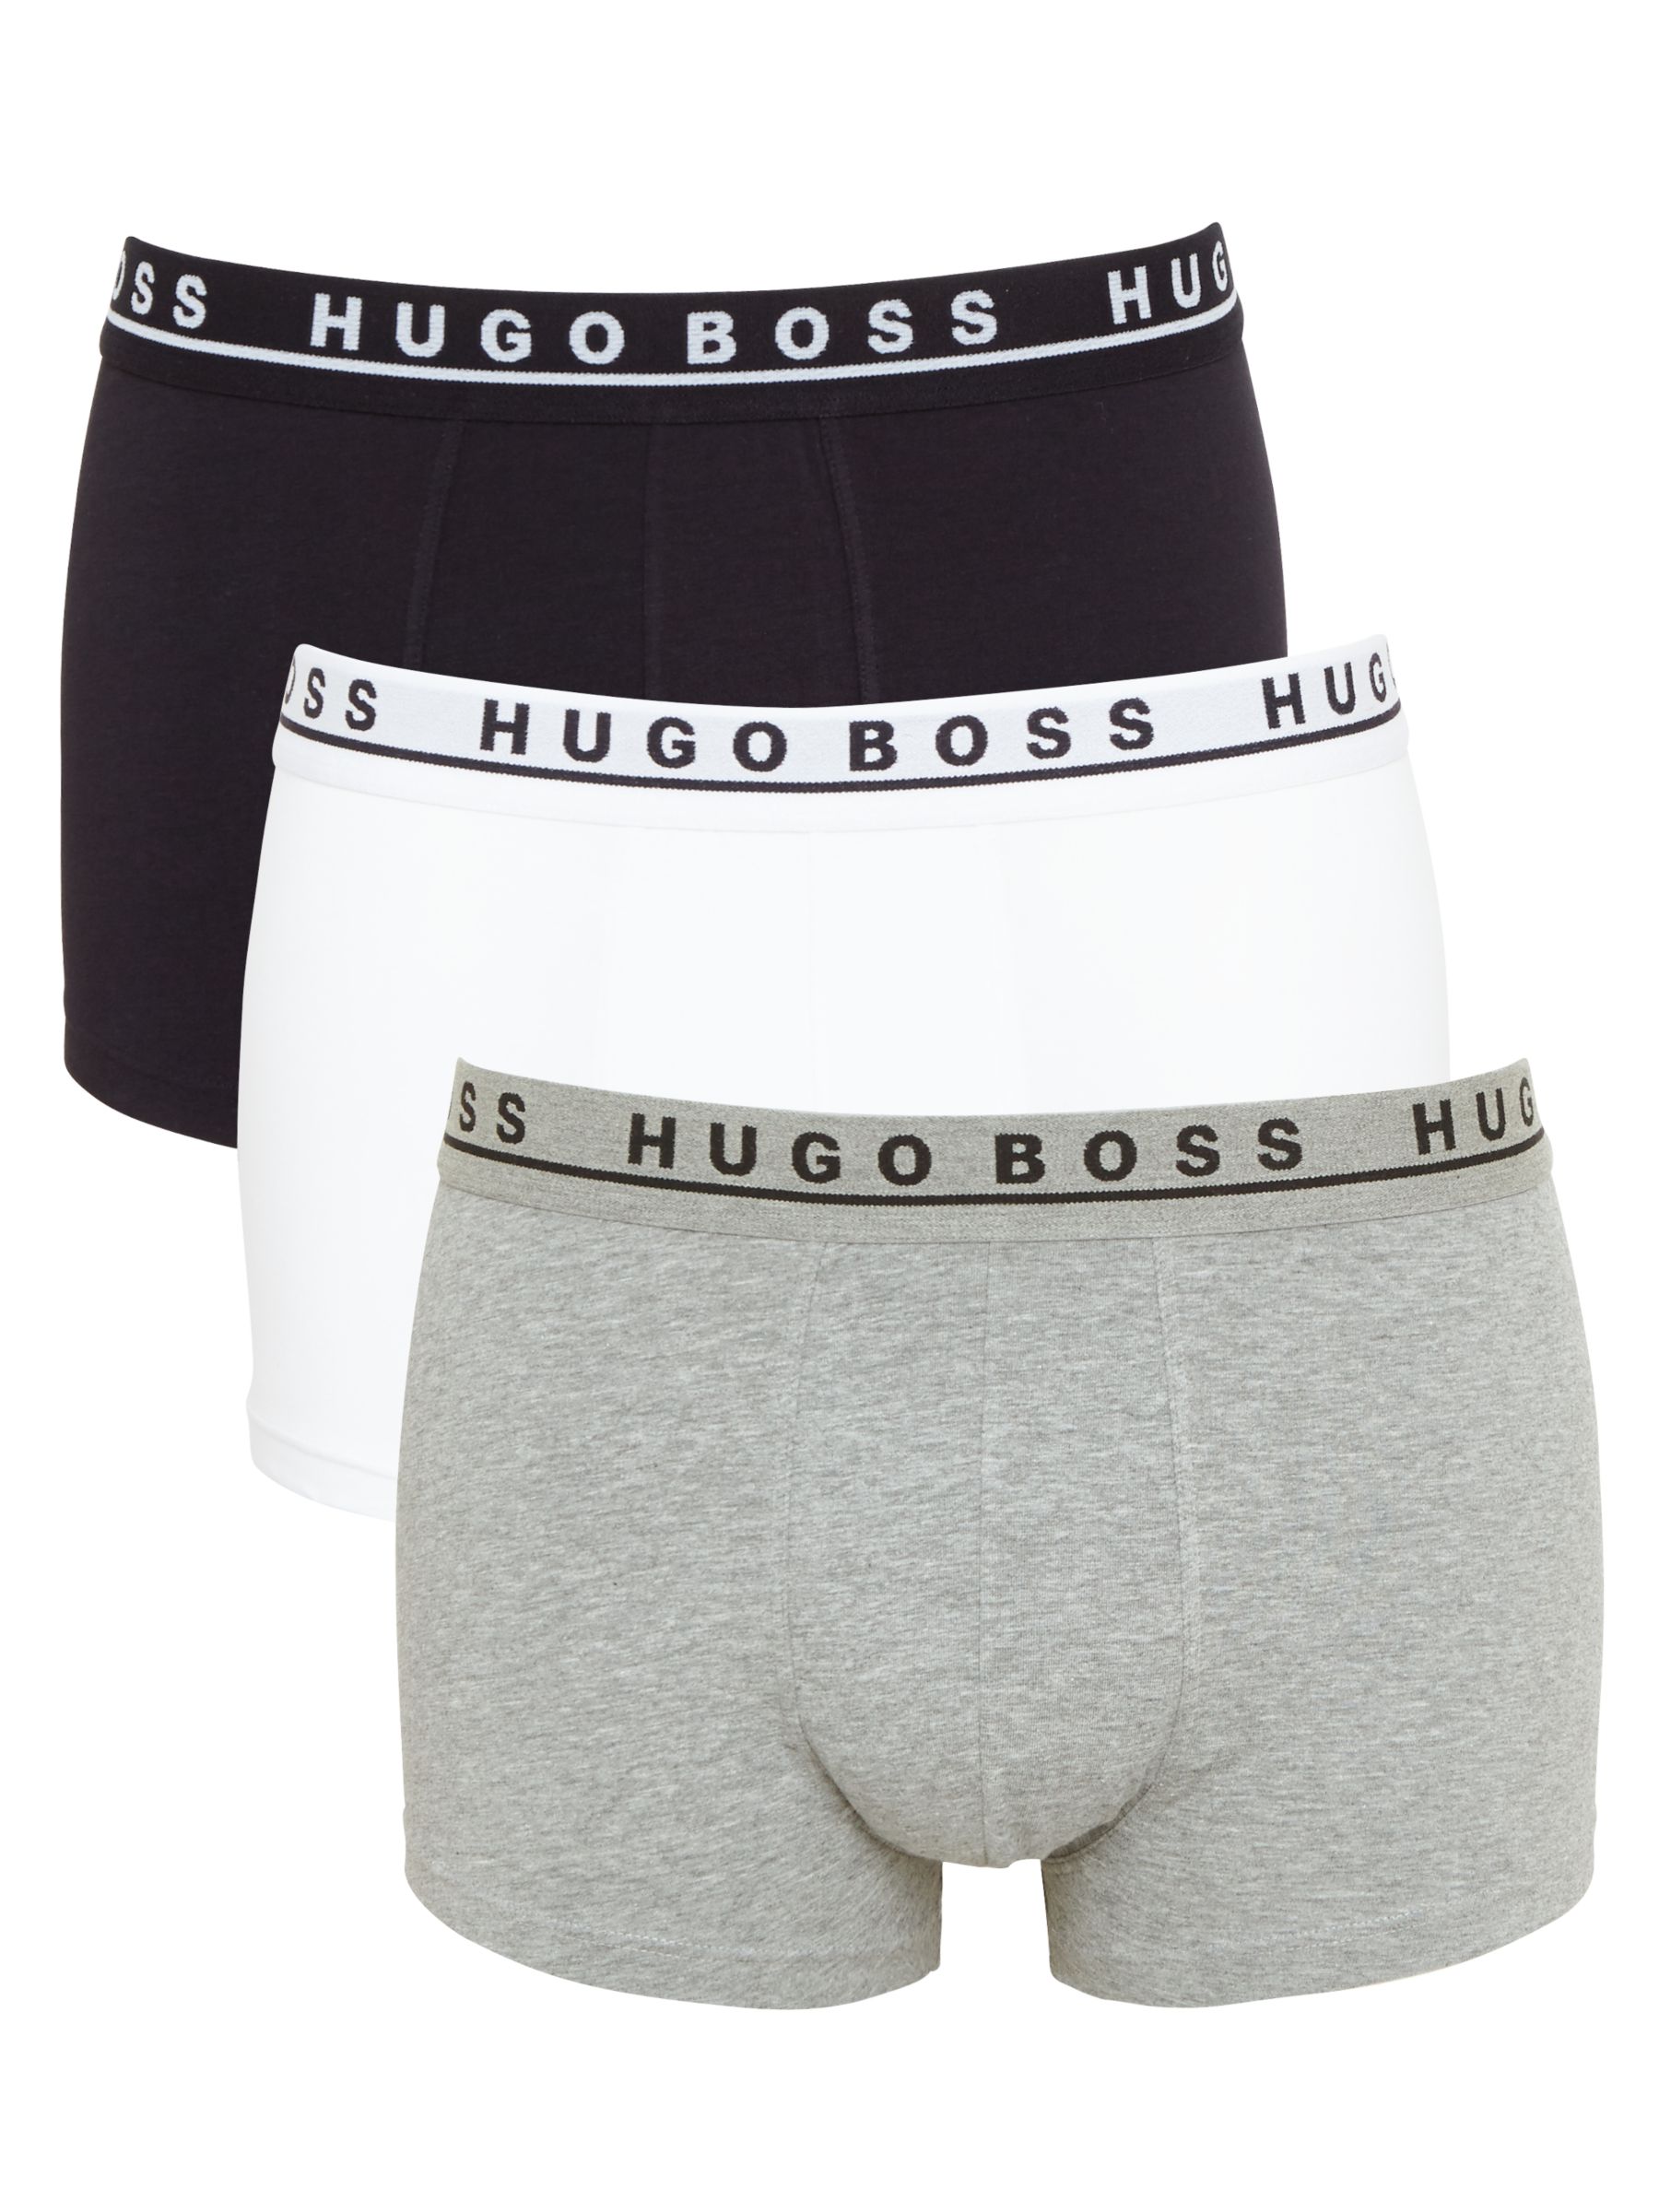 hugo underwear review